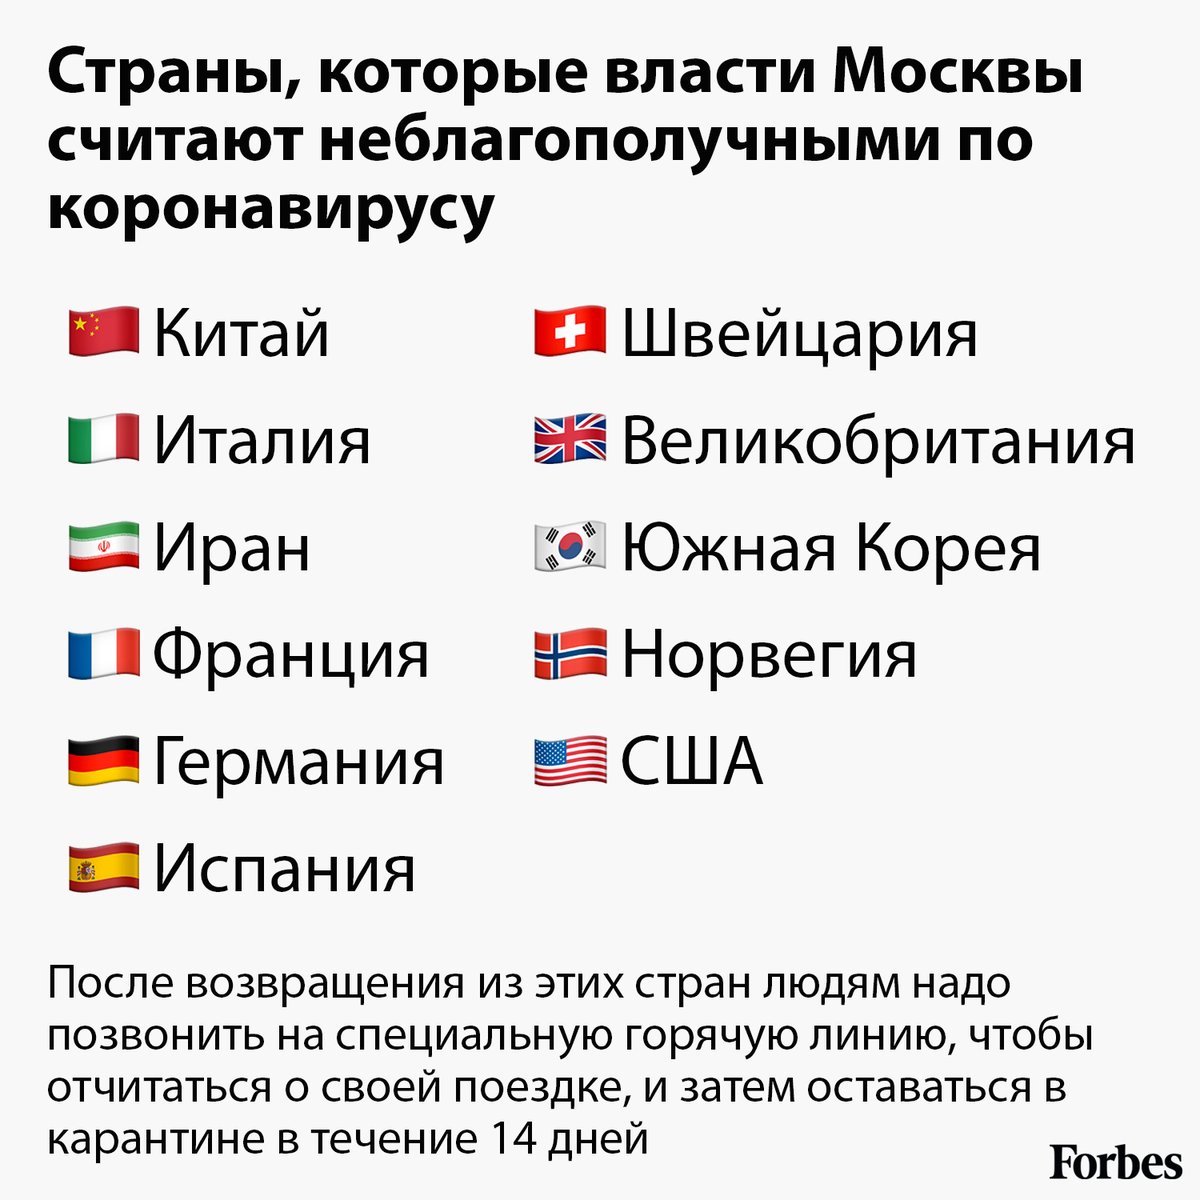 Страны имеющие влияние на россию